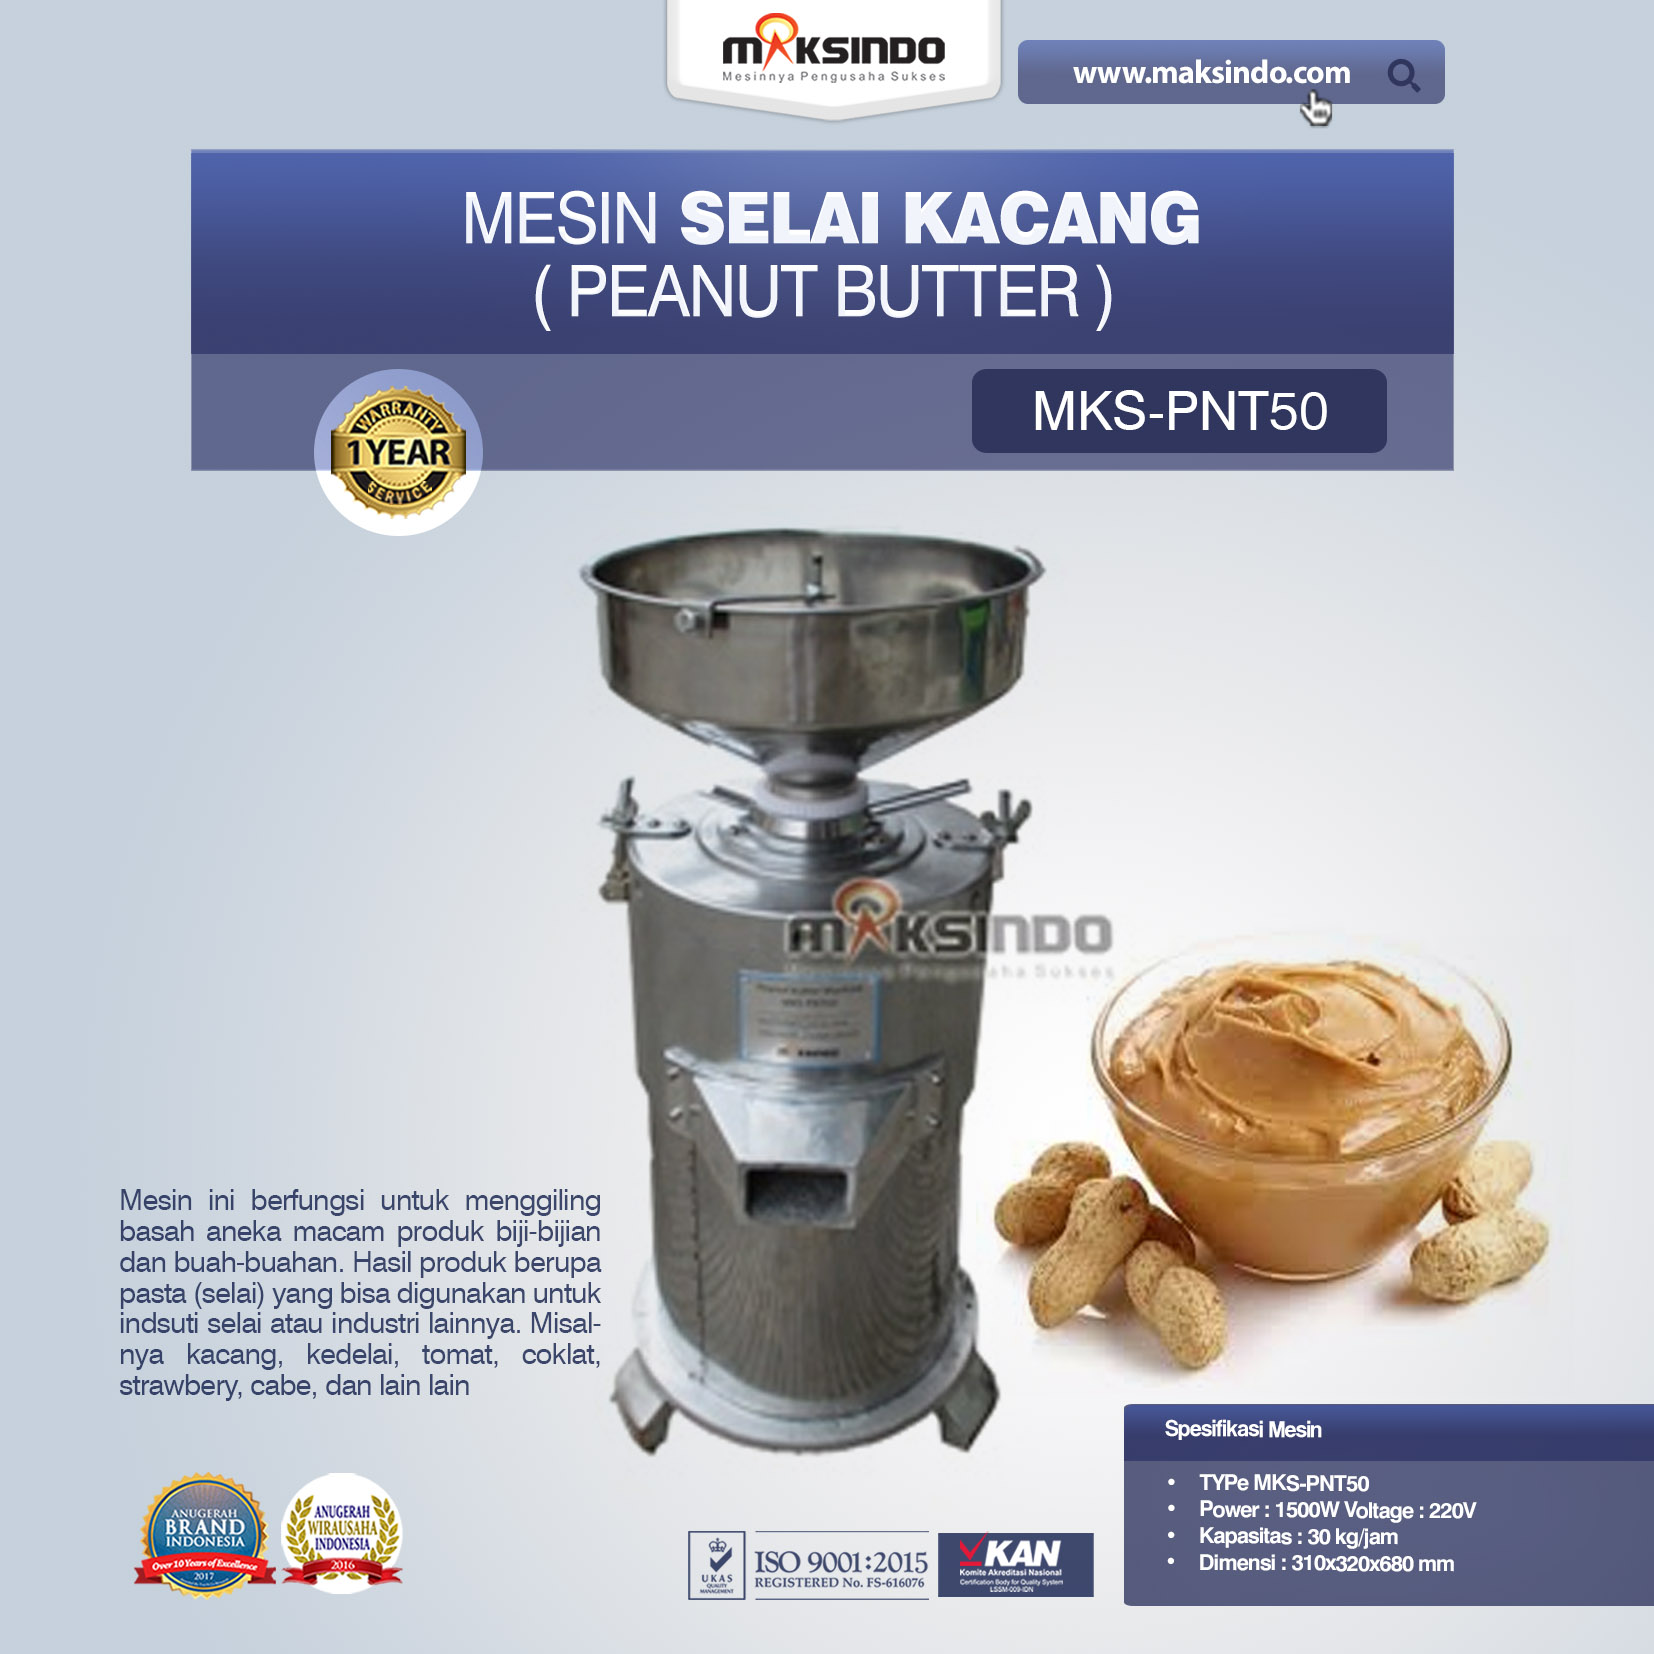 Jual Mesin Selai Kacang (Peanut Butter) MKS-PNT50 Di Banjarmasin